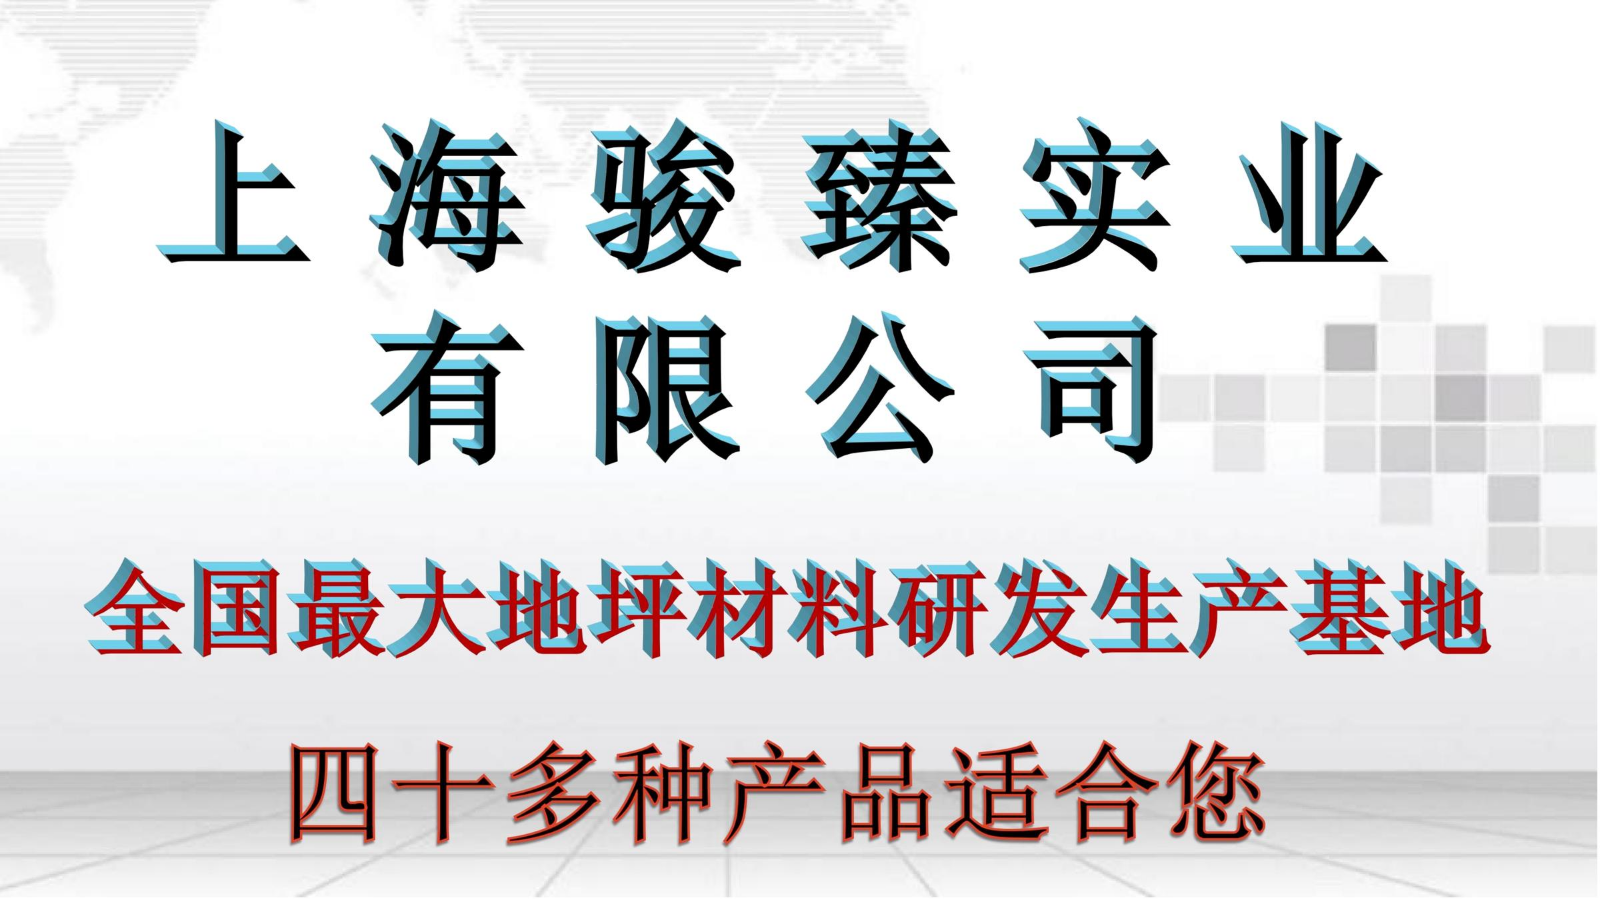 上海骏臻46种高科技产品  李世明